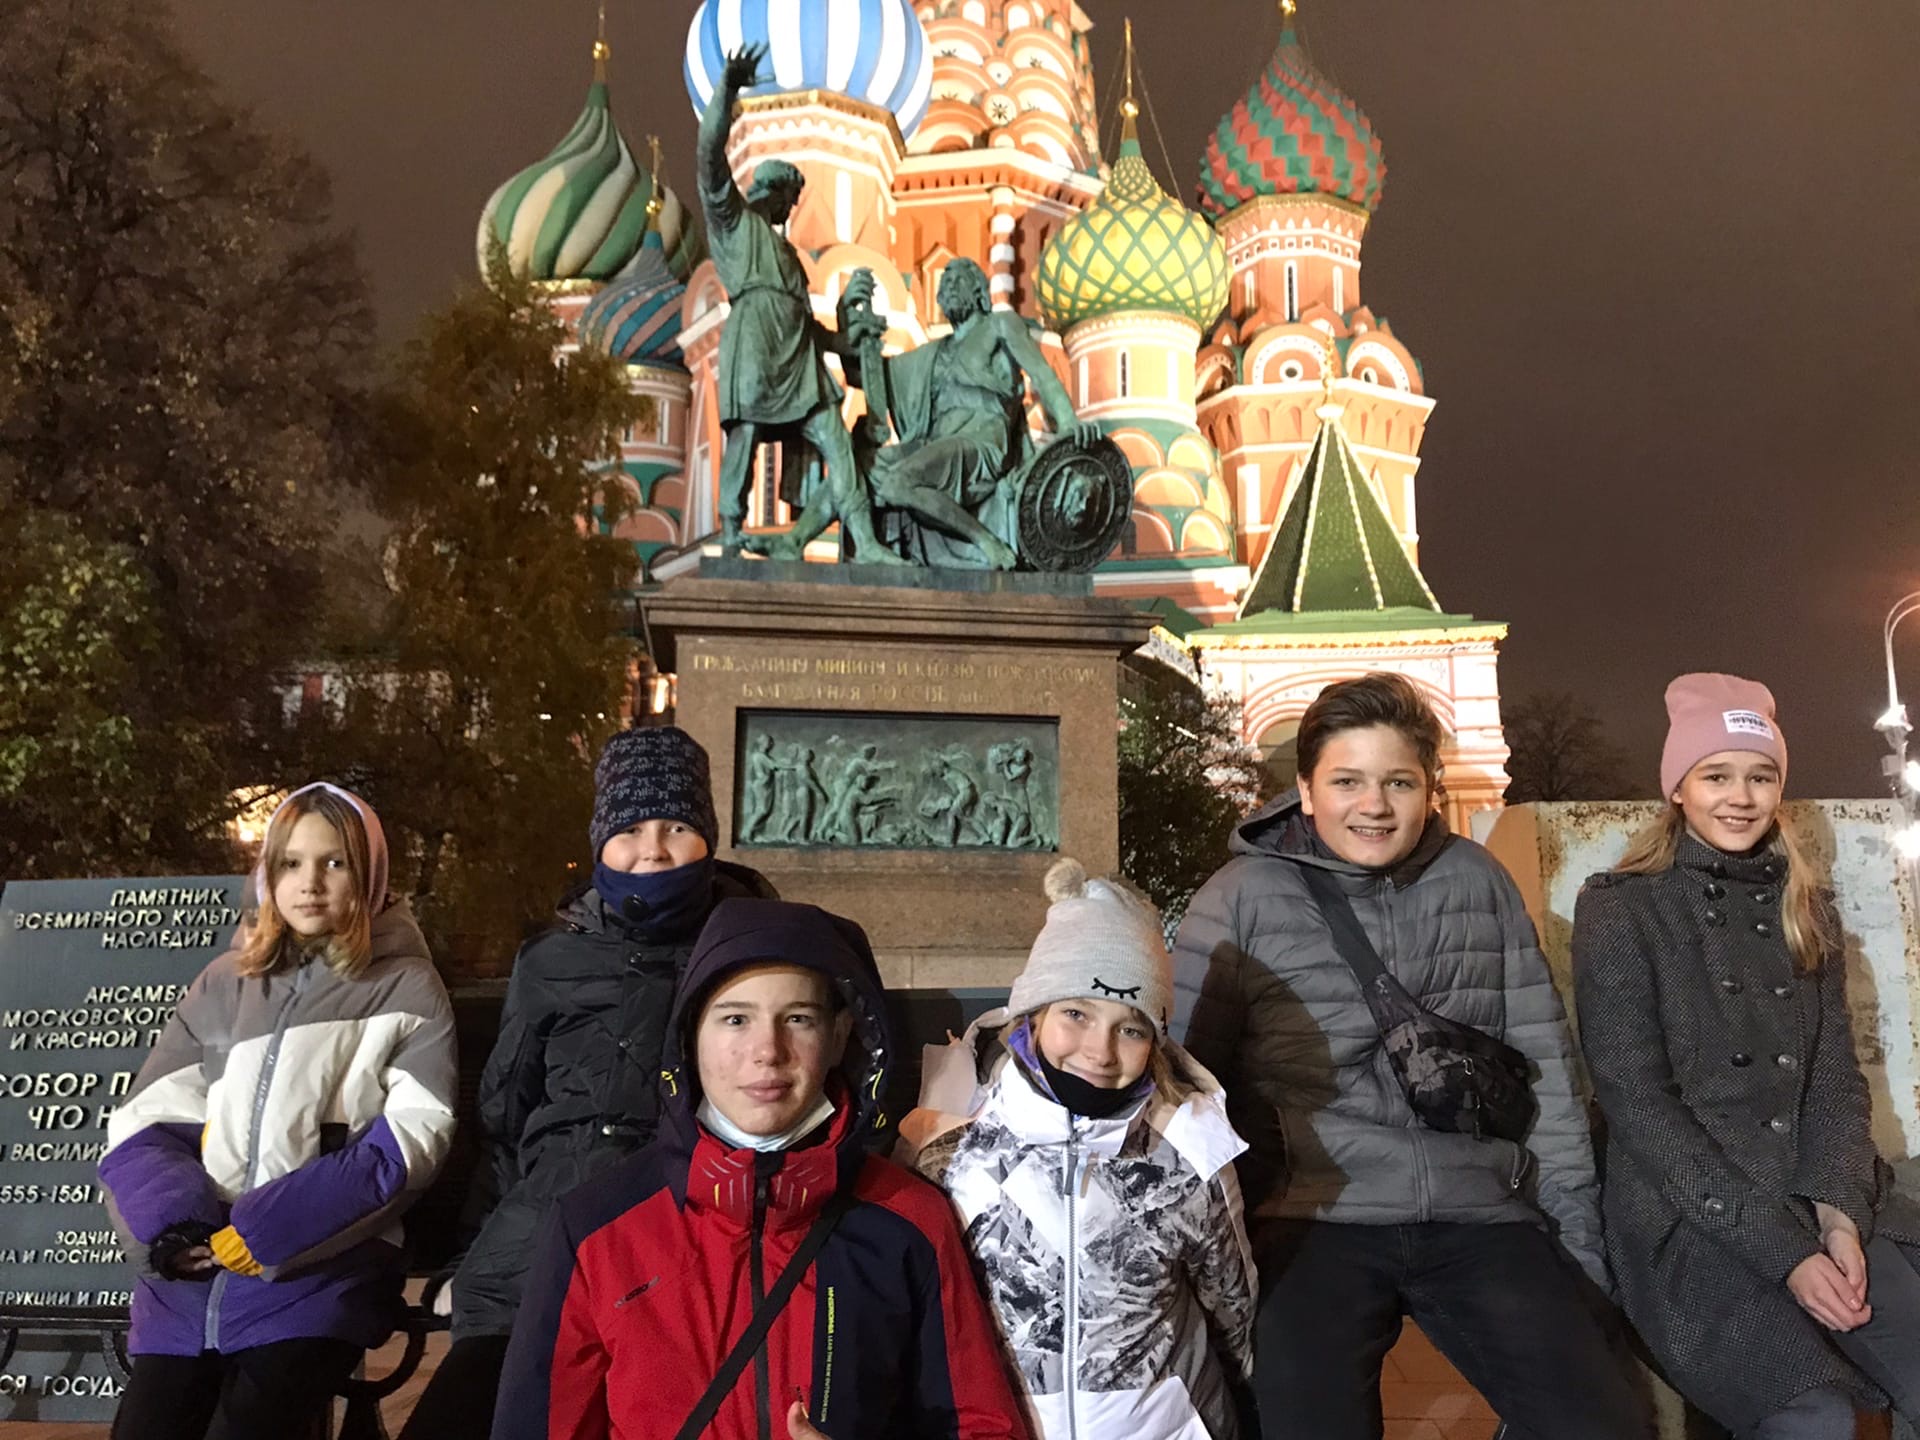 «Экскурсии с Cool kids» – Экскурсионный лагерь в Санкт-Петербурге, фото 4